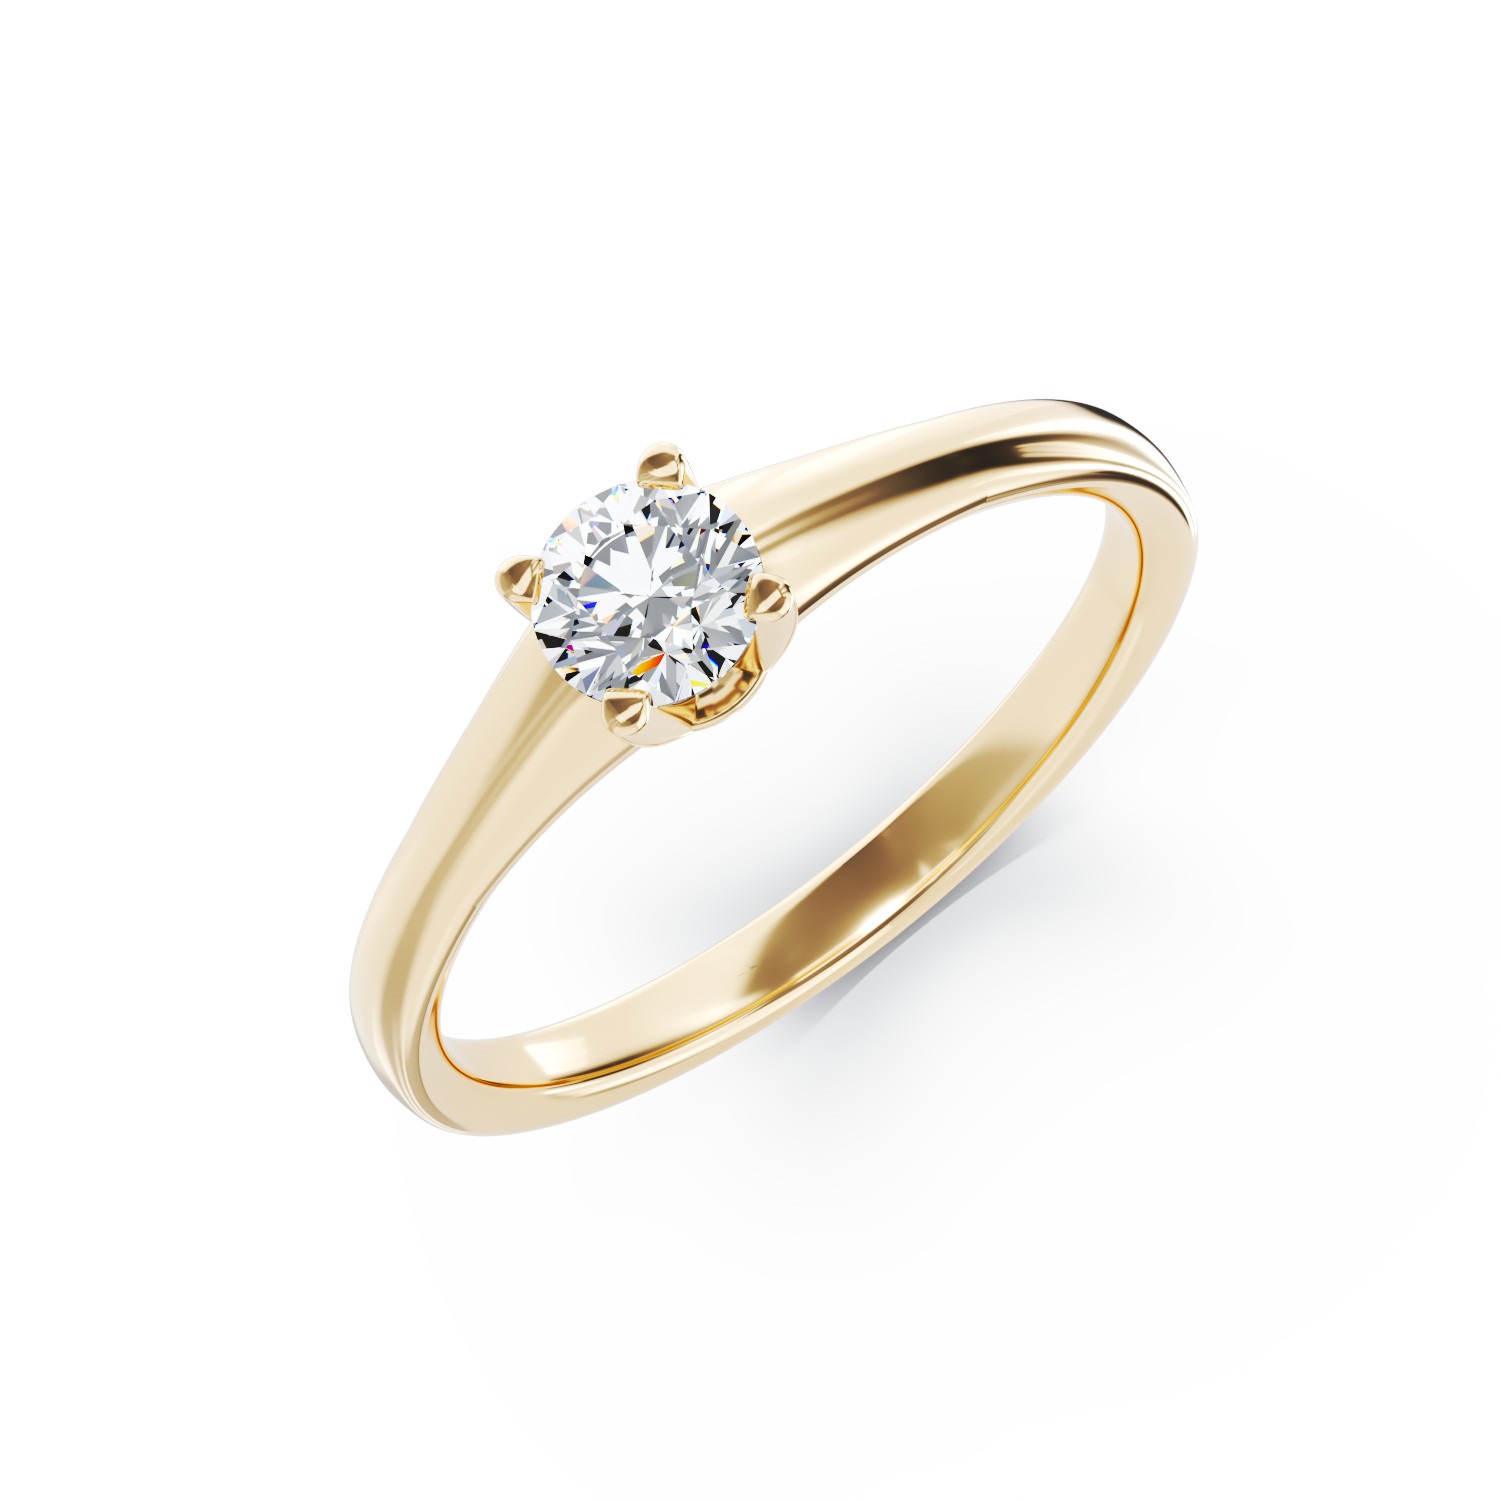 Eljegyzési gyűrű 18K-os sárga aranyból 0,3ct gyémánttal. Gramm: 2,95